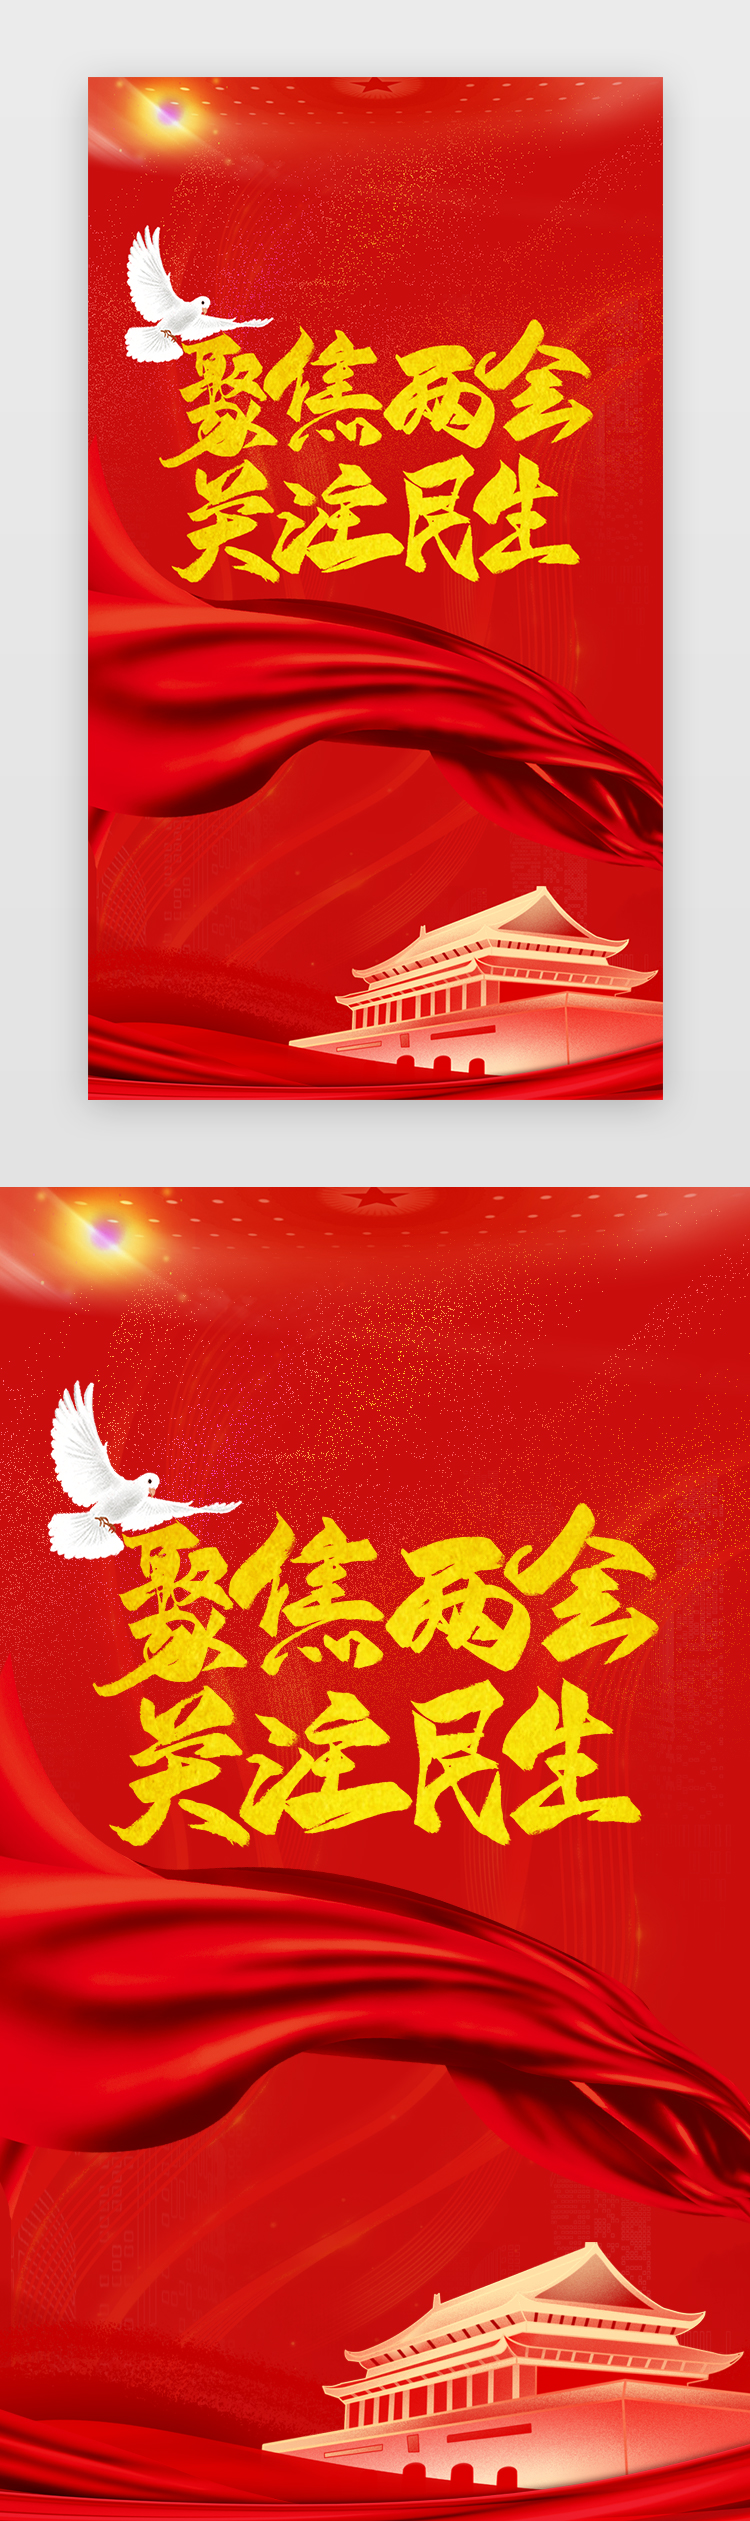 全国两会闪屏中国风红色和平鸽图片